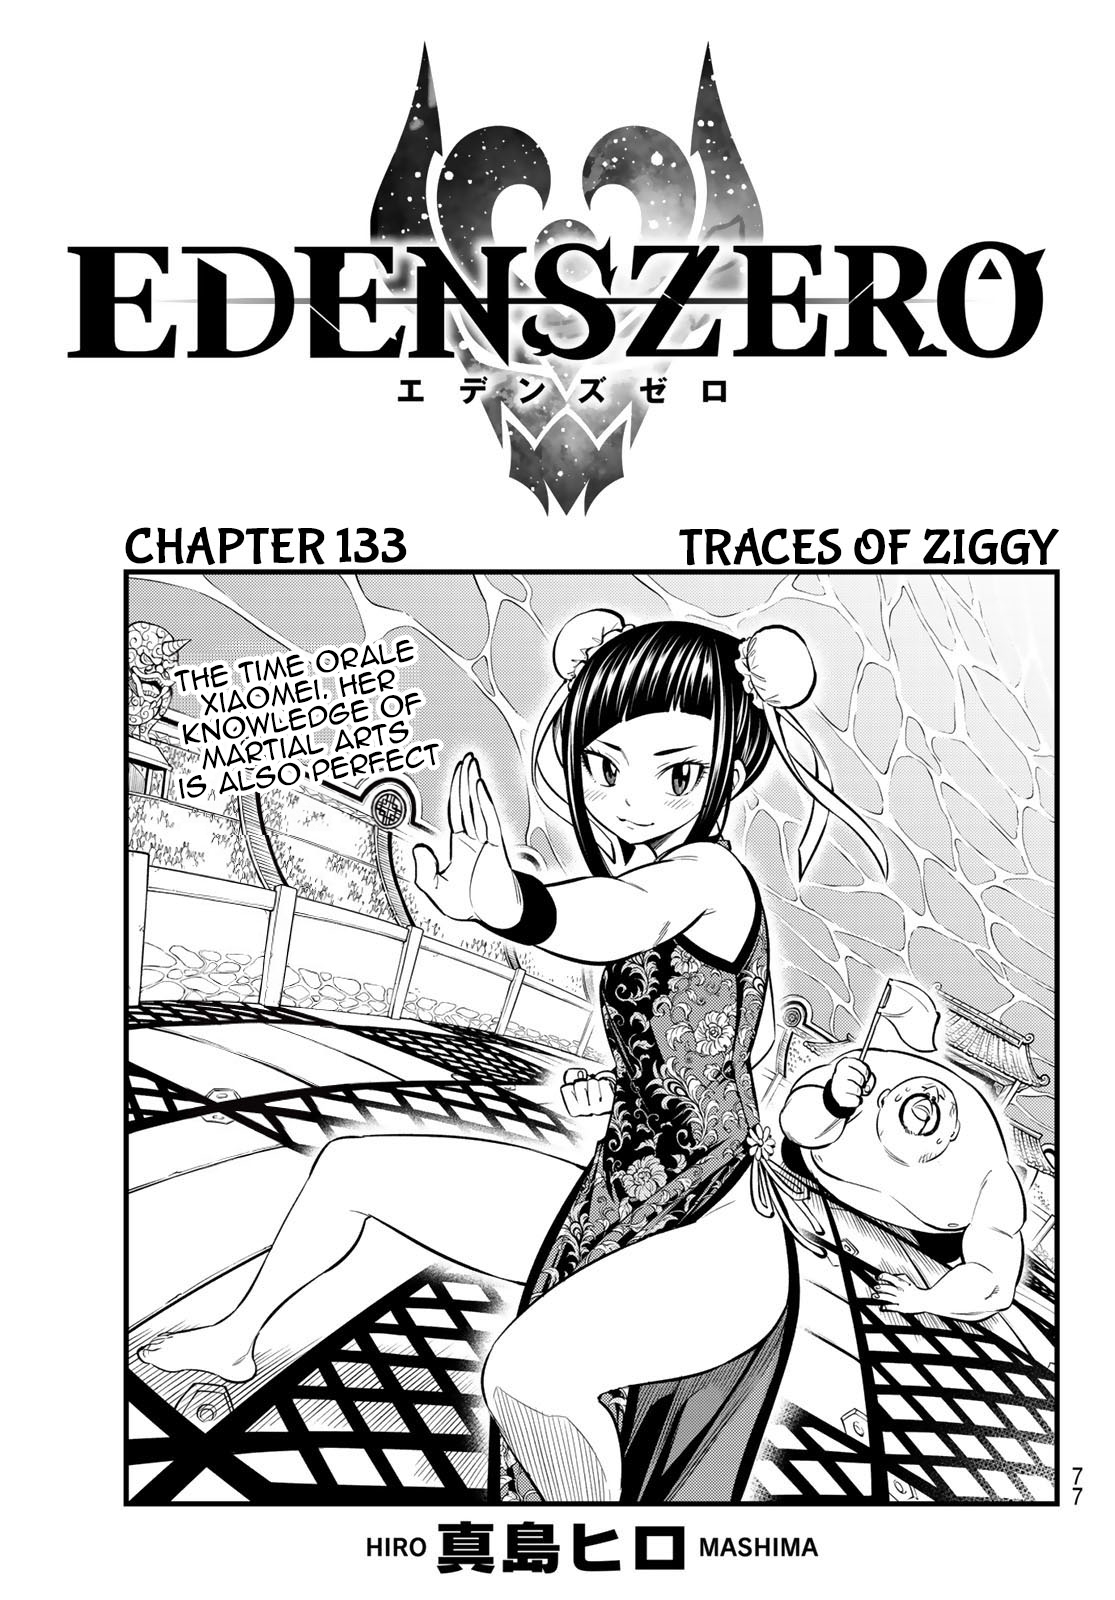 Edens Zero 133 Traces of Ziggy